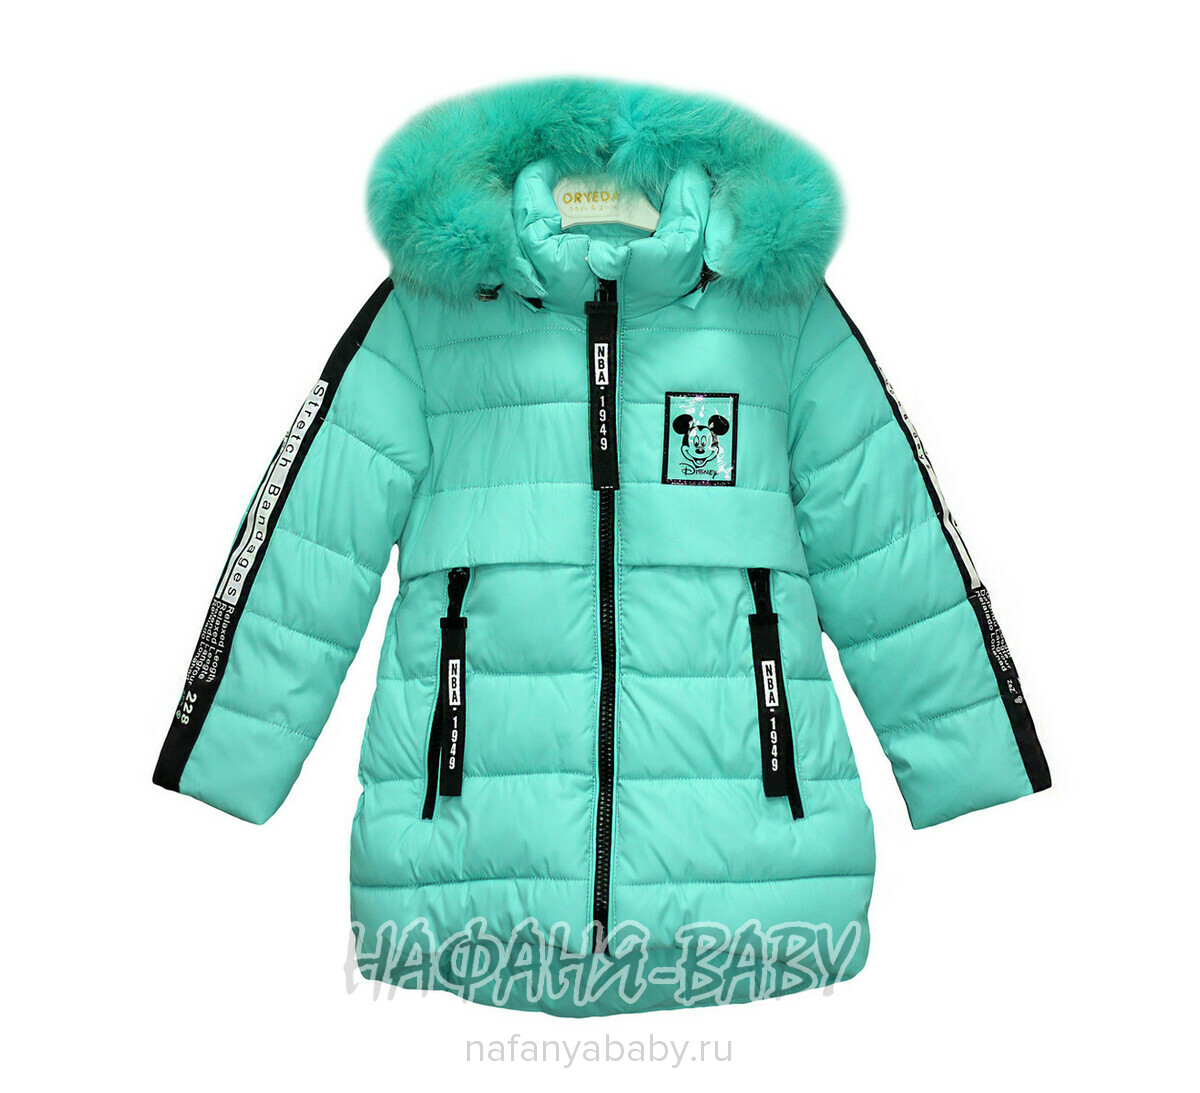 Детская удлиненная зимняя куртка YINUO, купить в интернет магазине Нафаня. арт: 1833.